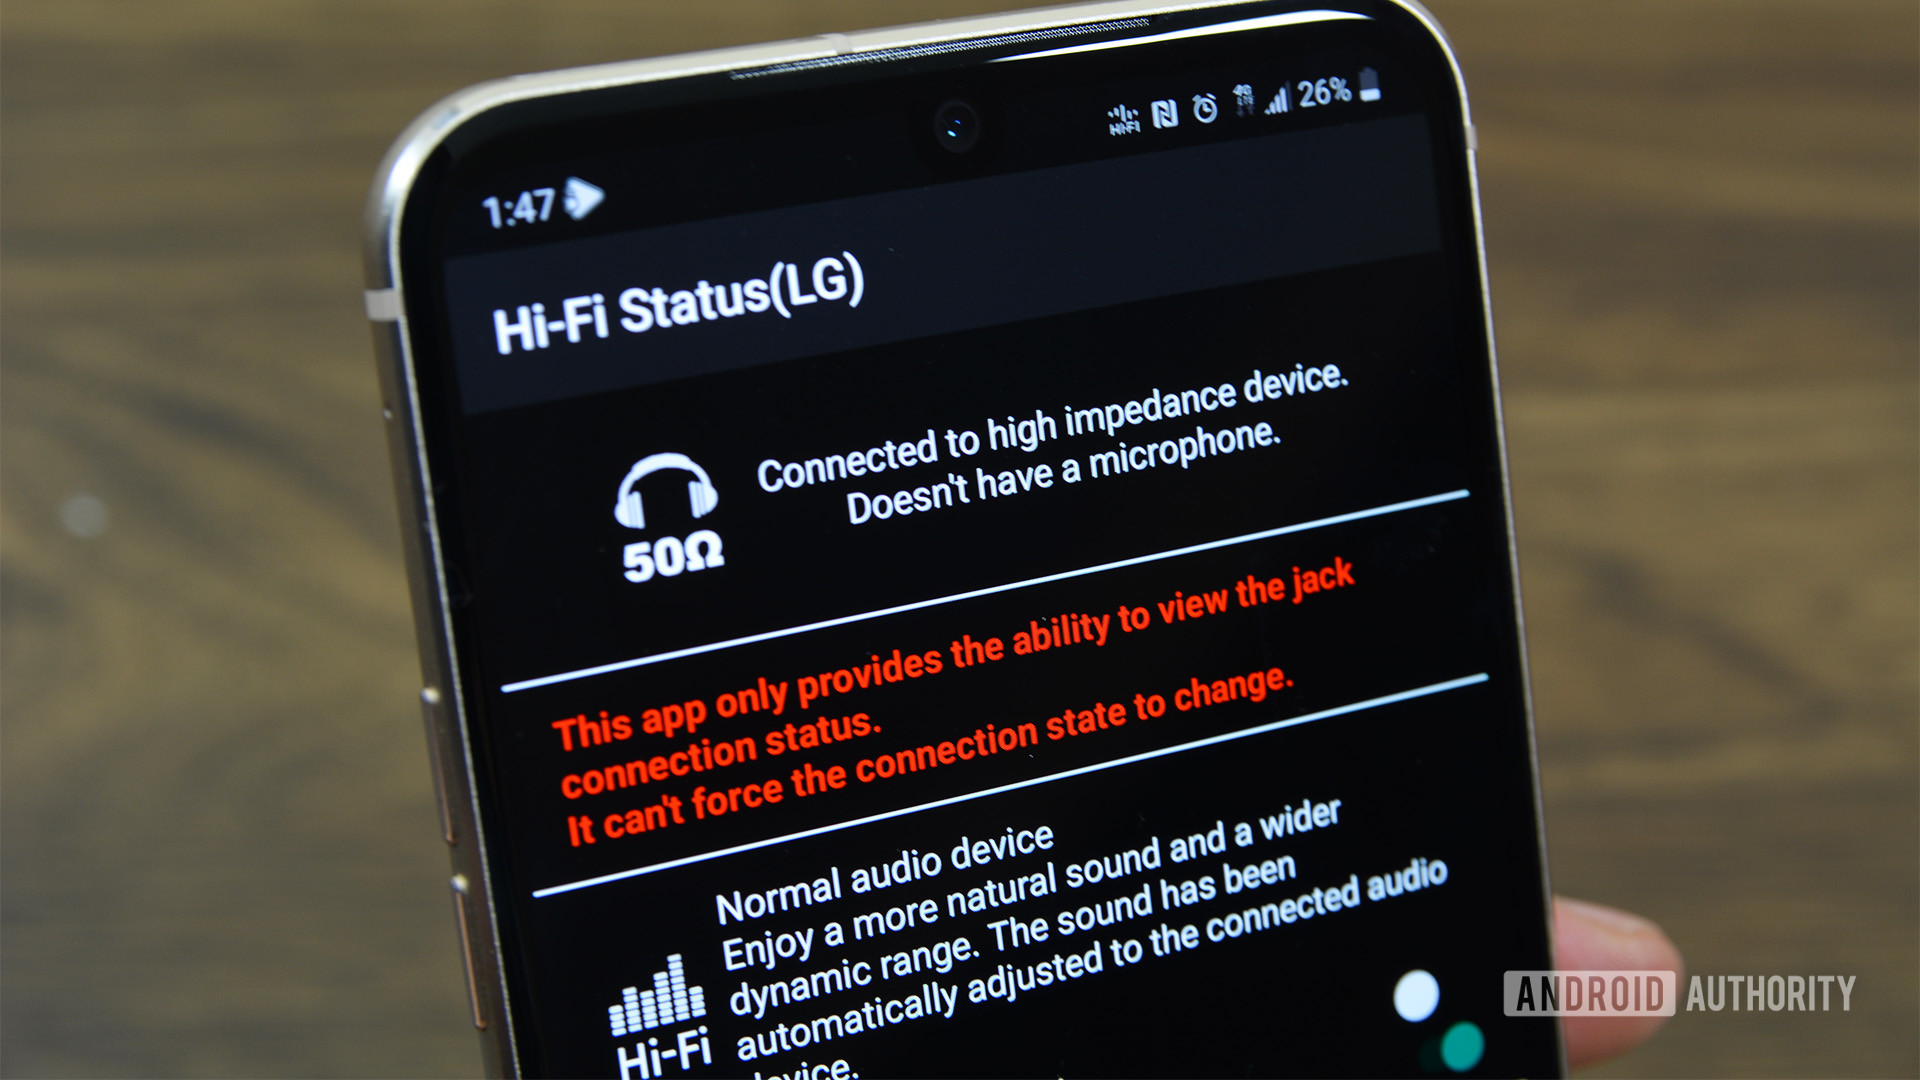 HiFi Status LG app